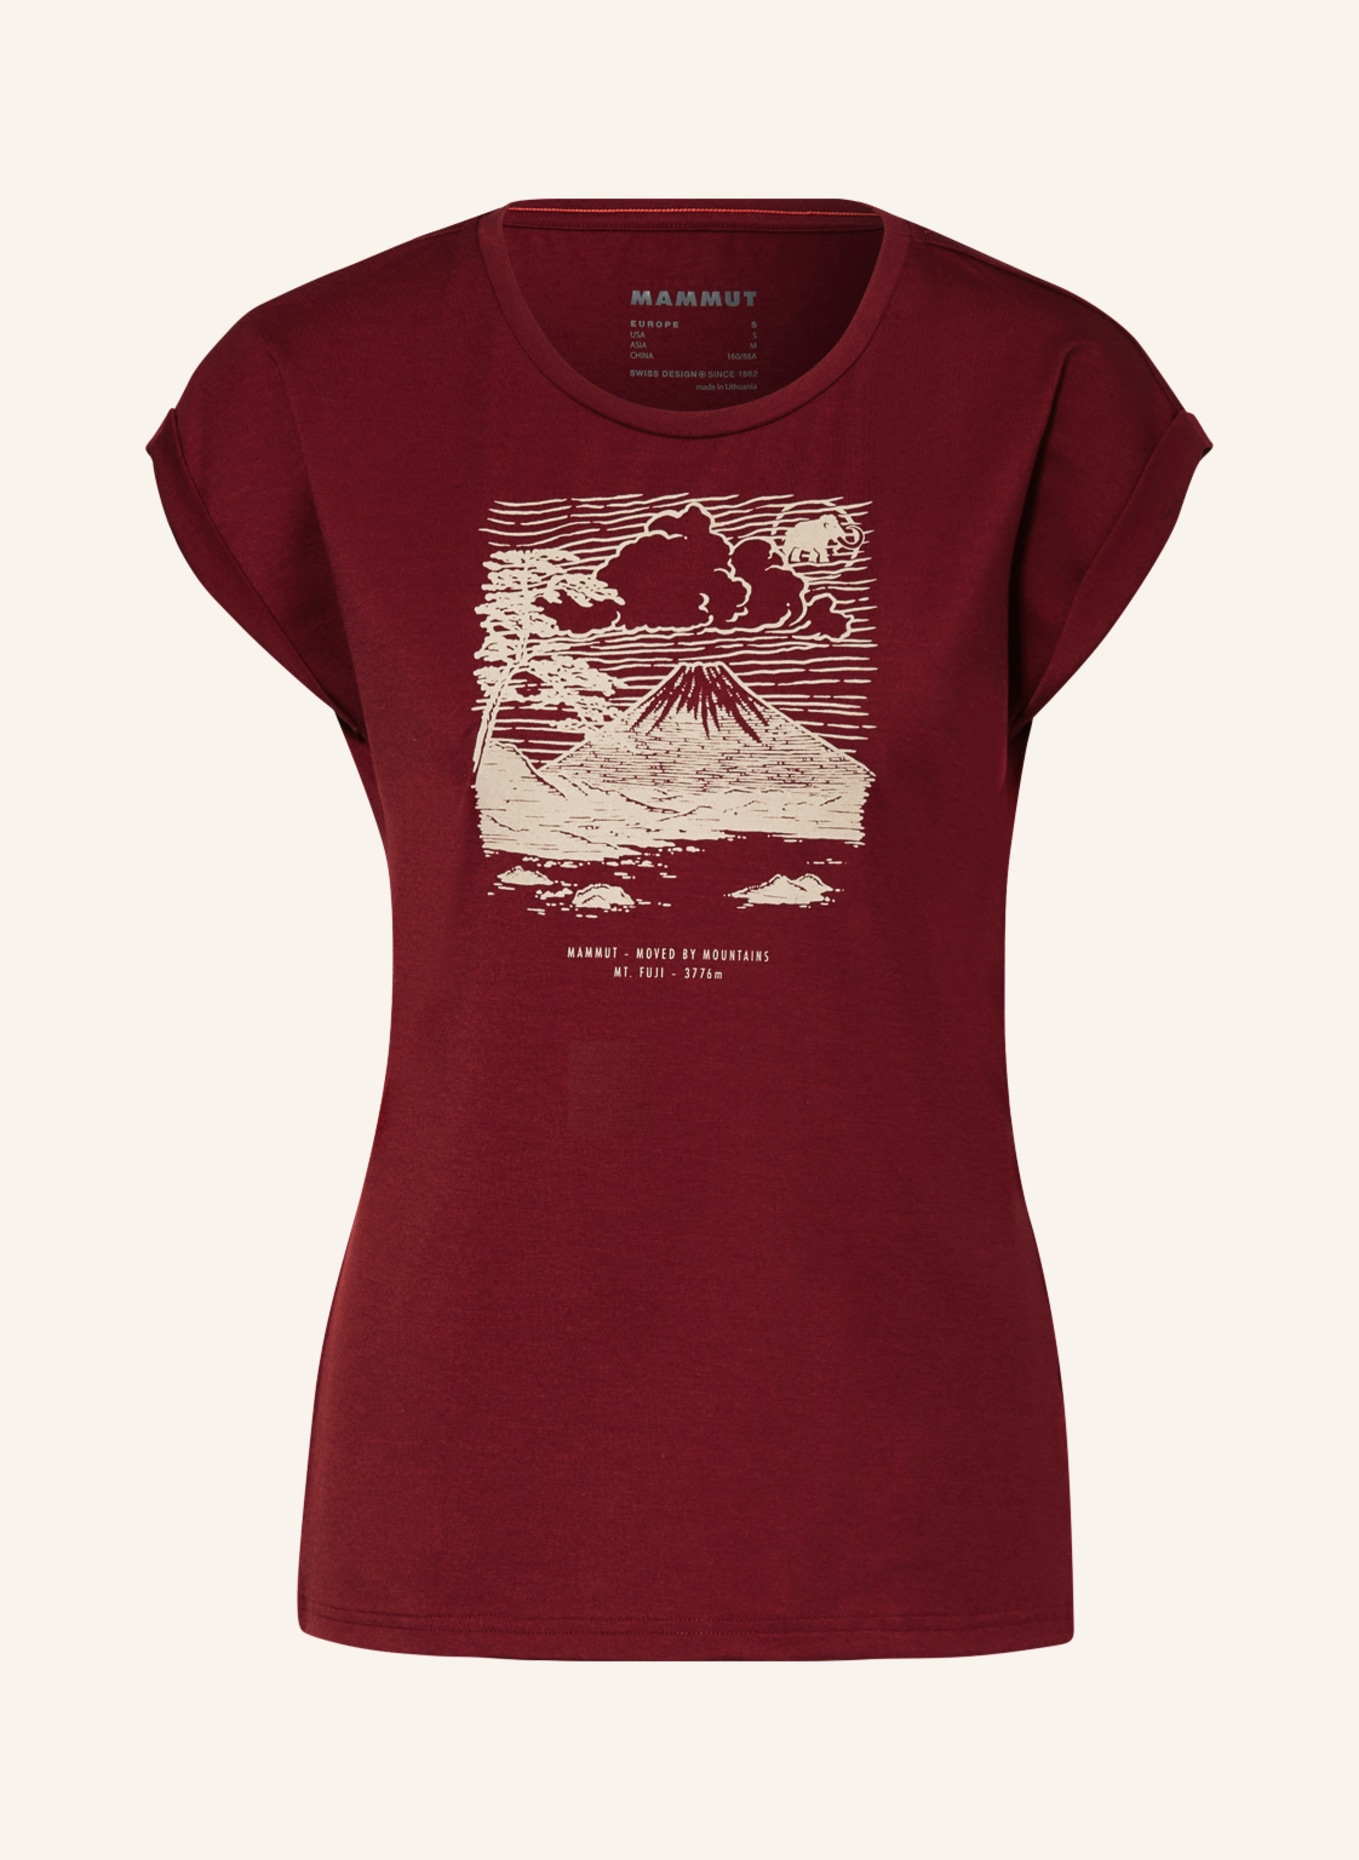 MAMMUT T-Shirt FUJIYAMA, Farbe: DUNKELROT/ HELLBRAUN (Bild 1)